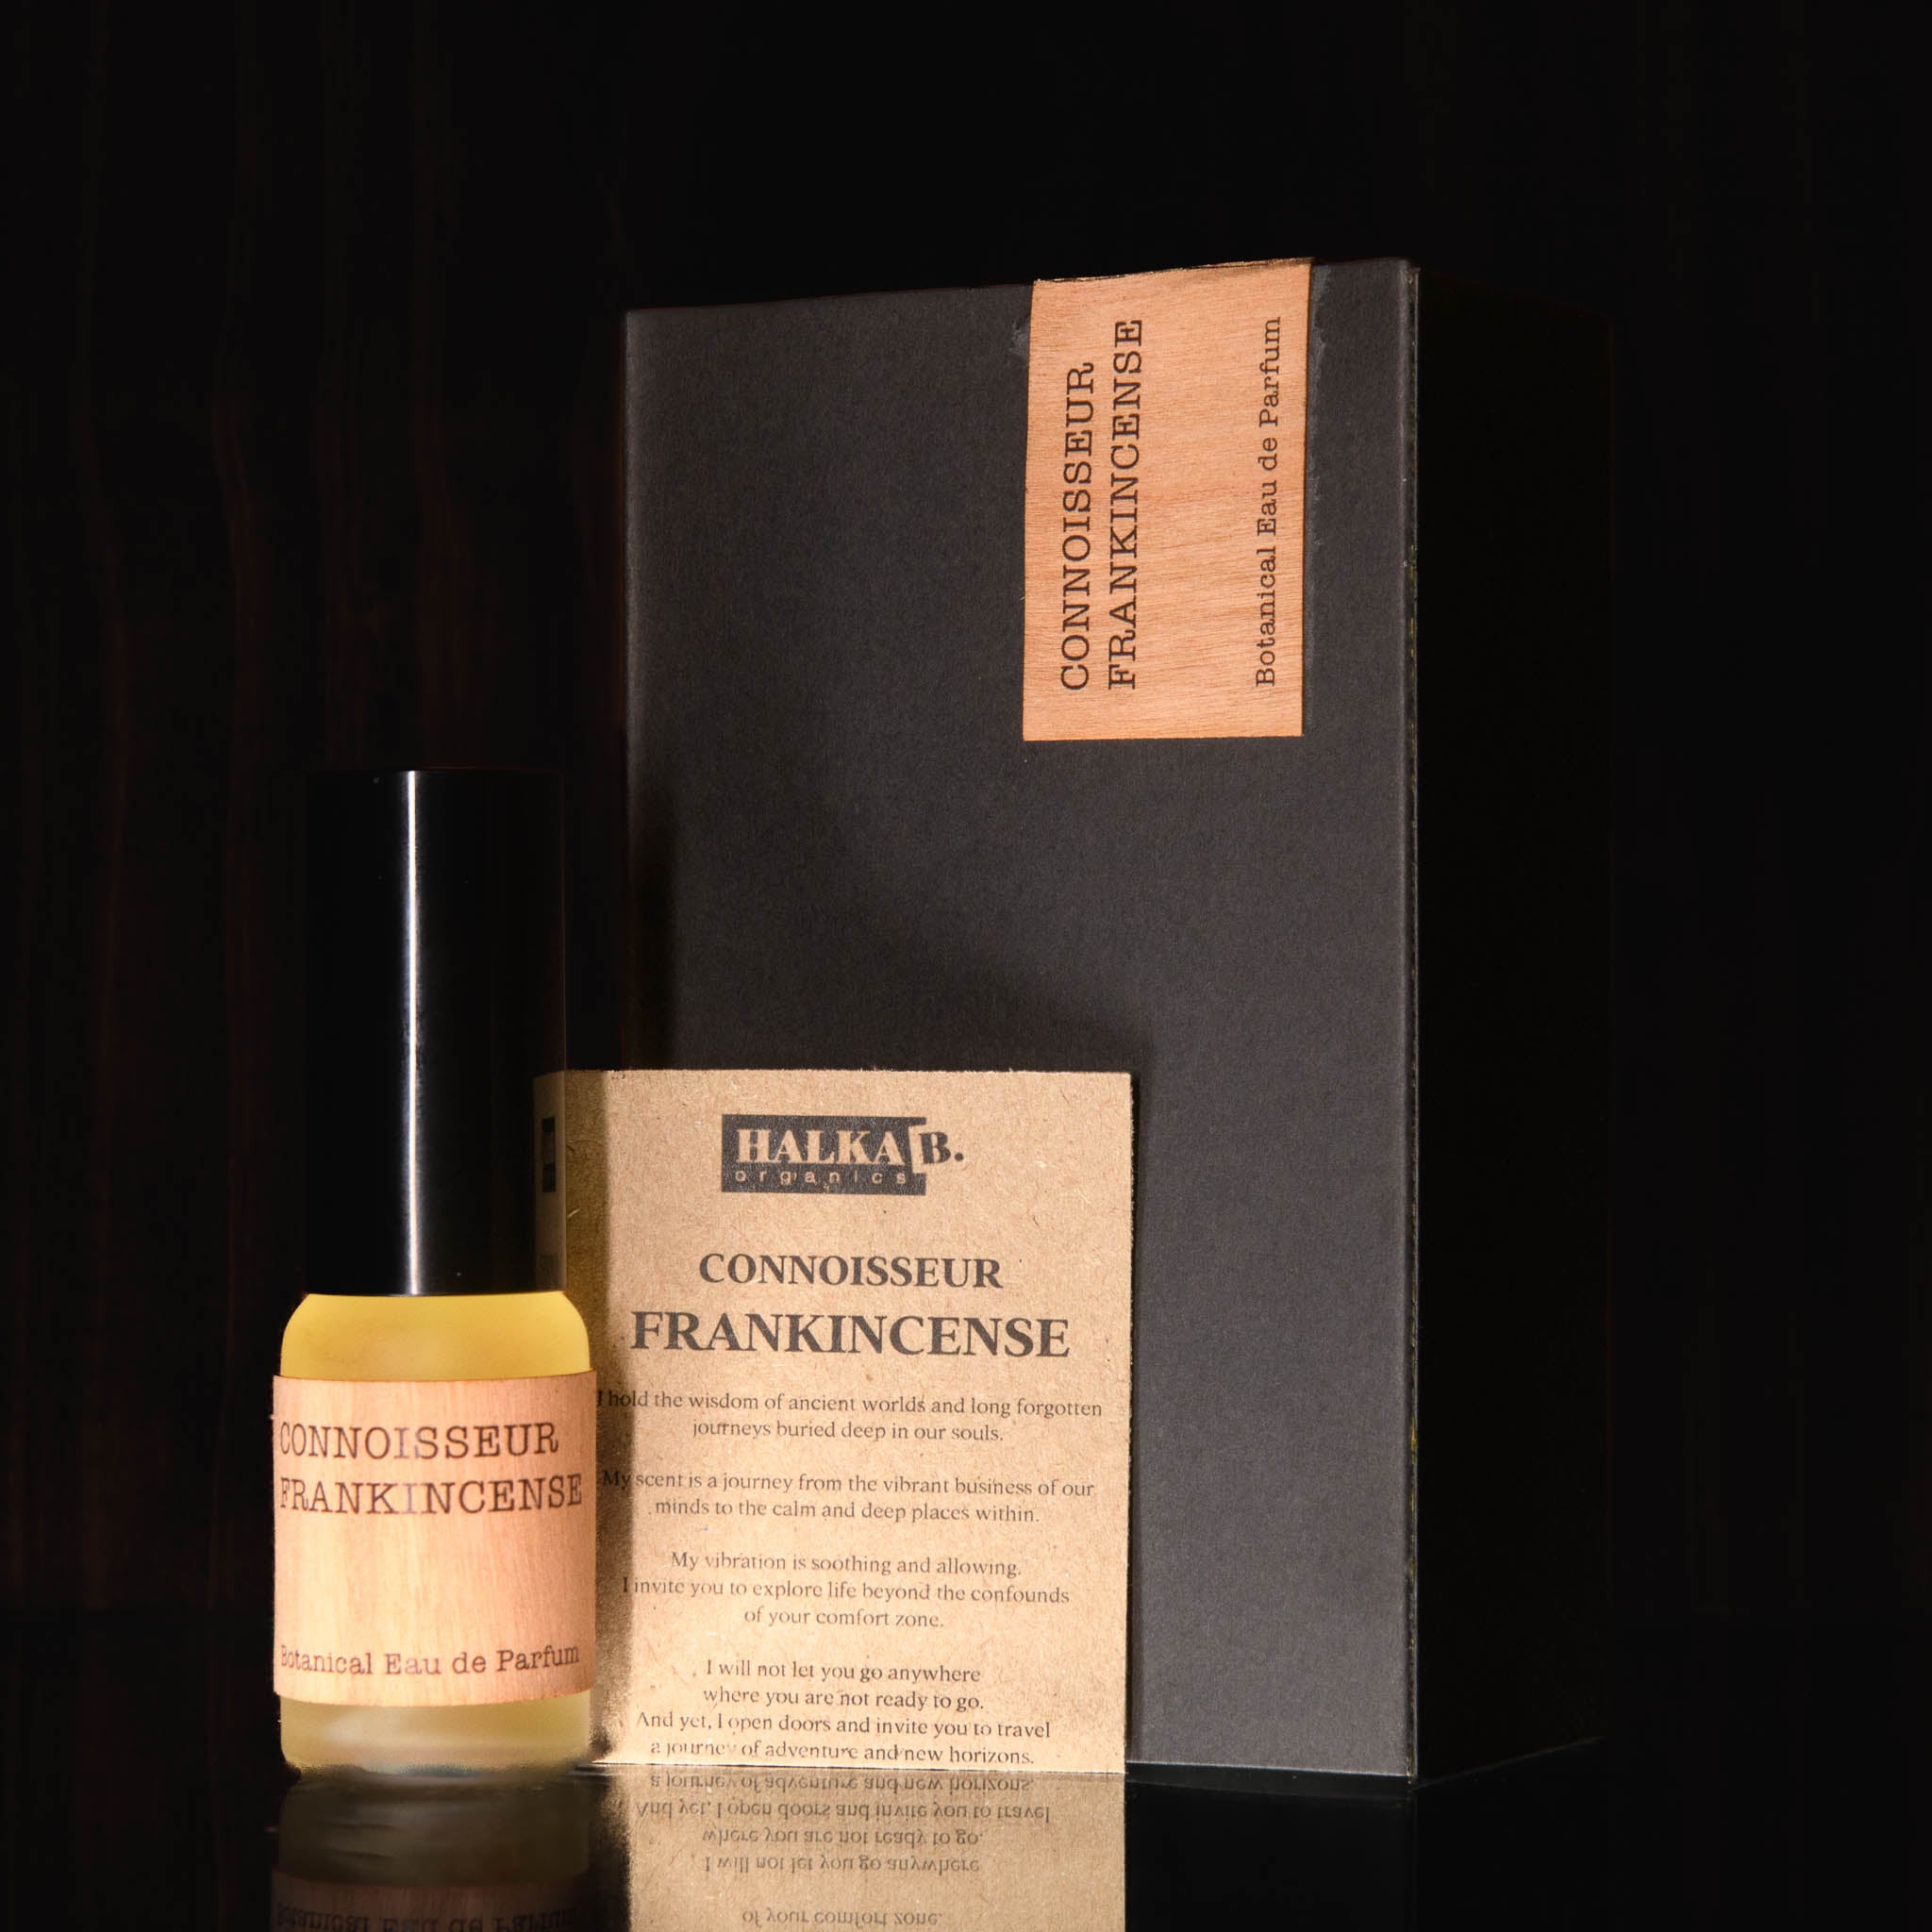 Connoisseur Frankincense Natural Eau de Parfum